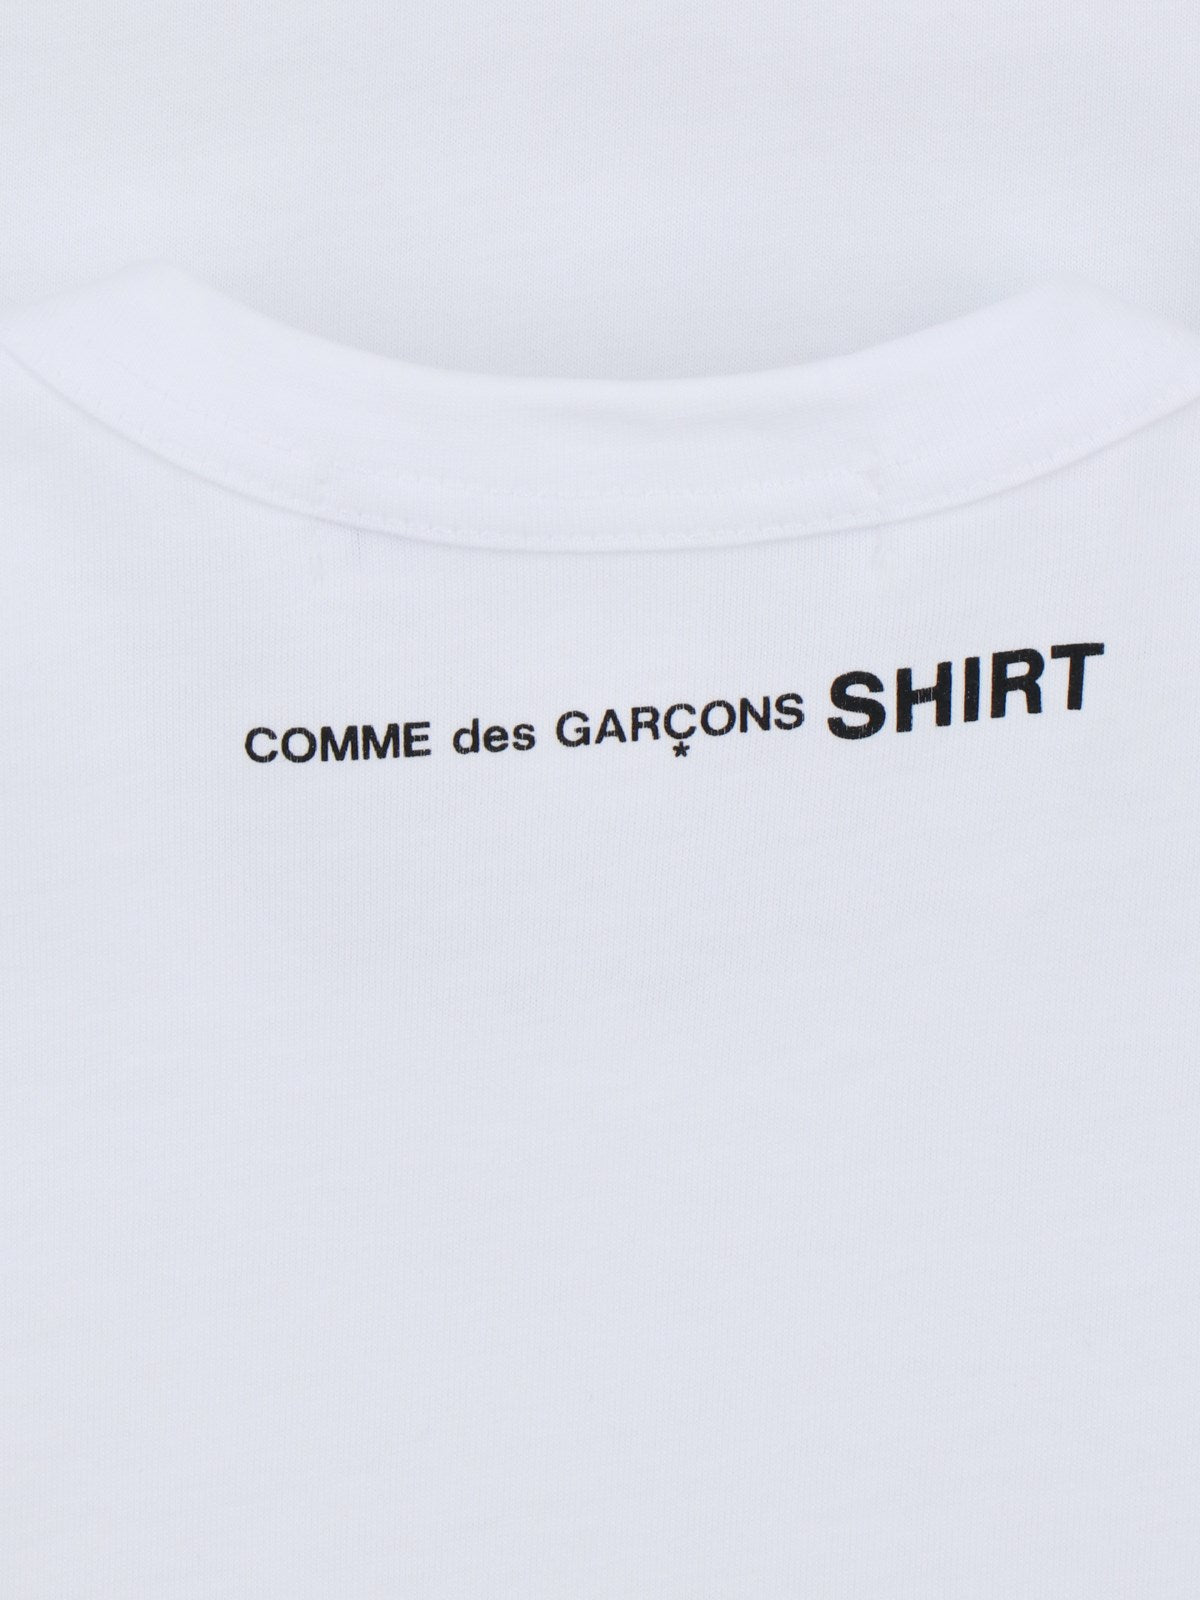 COMME DES GARCONS SHIRT-Comme des Garcons-La maglietta base COMME DES GARCONS SHIRT, in cotone bianco, ha un girocollo, maniche corte e un orlo dritto. Il codice prodotto è FM T011 S242 e la composizione è 100% cotone. La vestibilità e le dimensioni sono regolari e il prodotto è made in Turchia.-Dresso